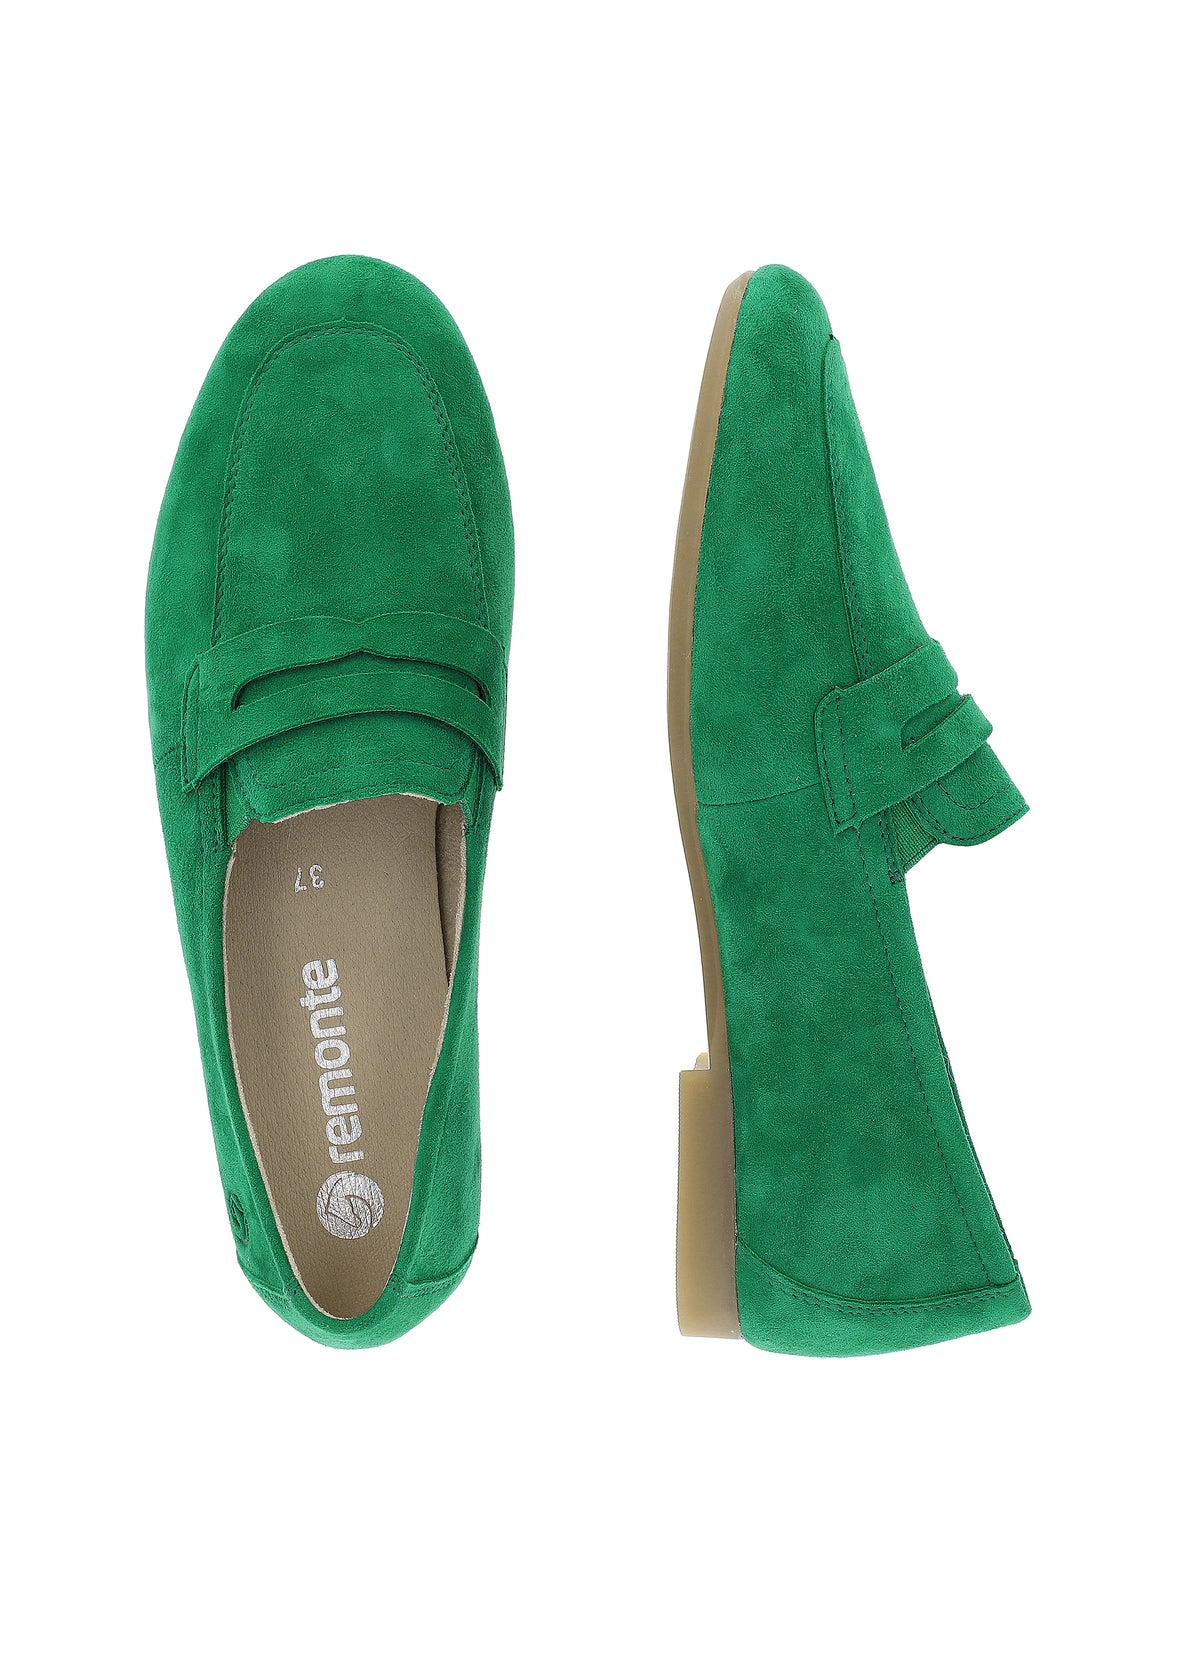 Loafers - grön mocka, loaferrem som dekoration